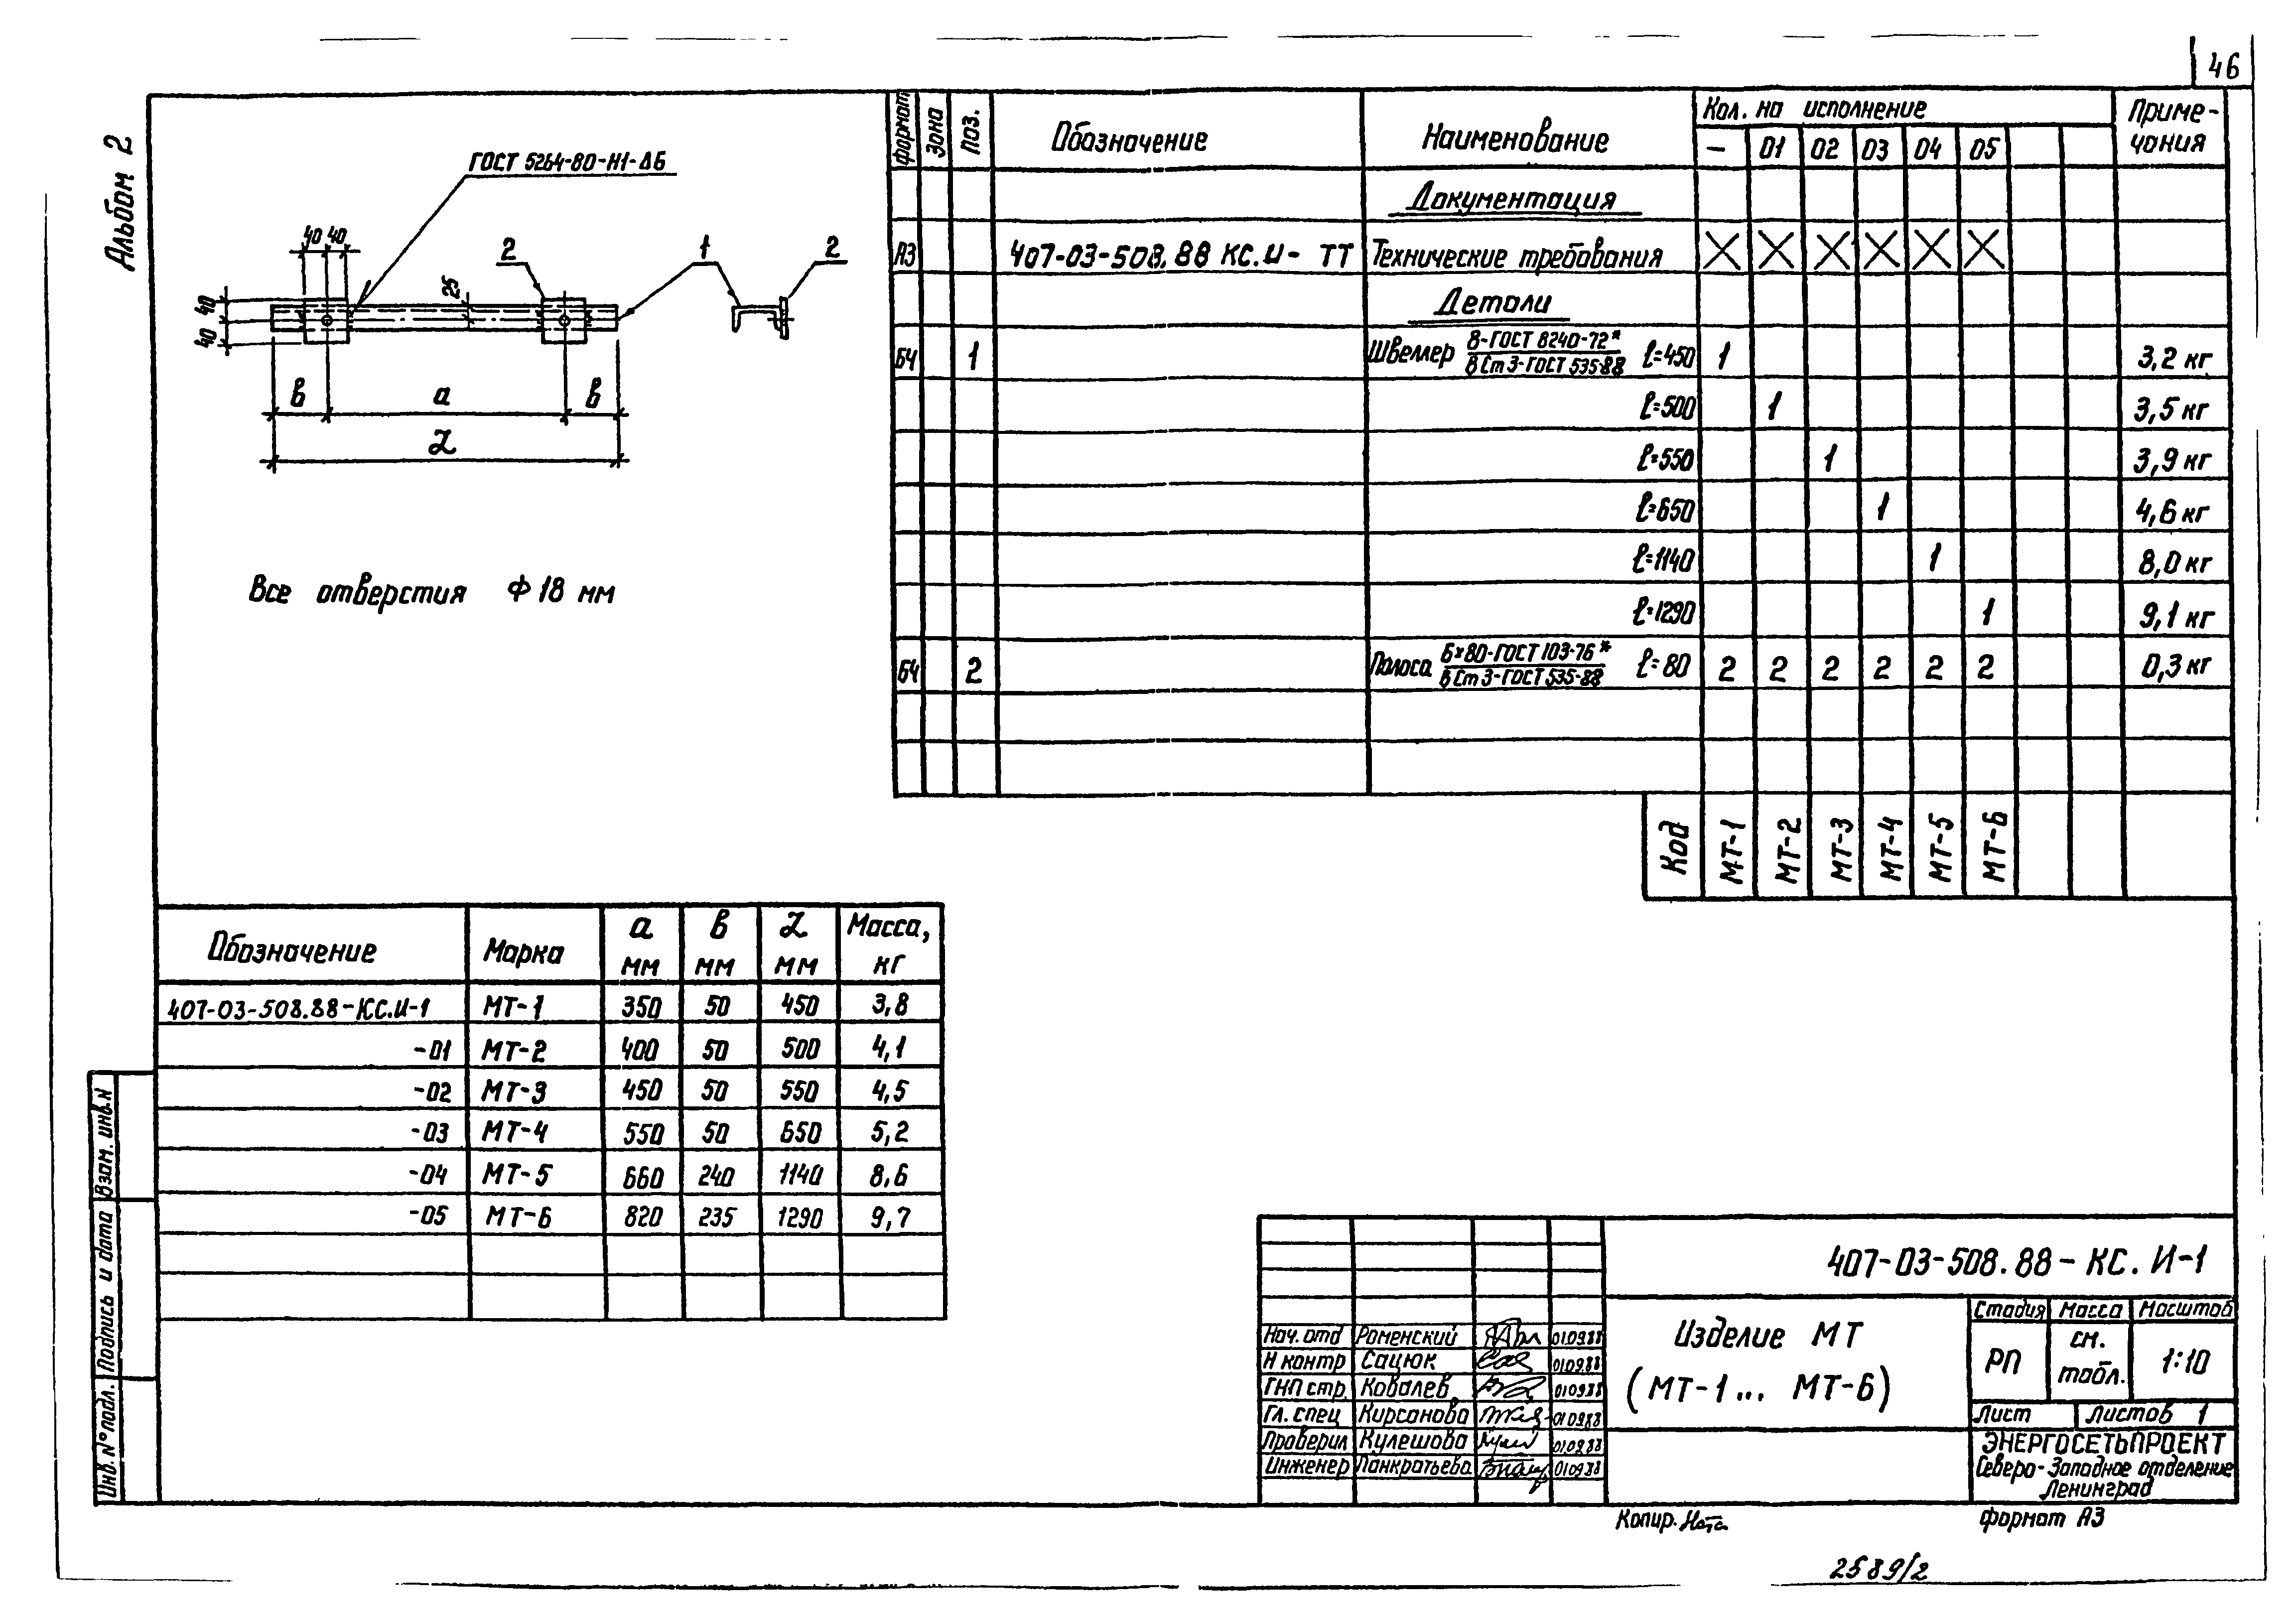 Типовые материалы для проектирования 407-03-508.88